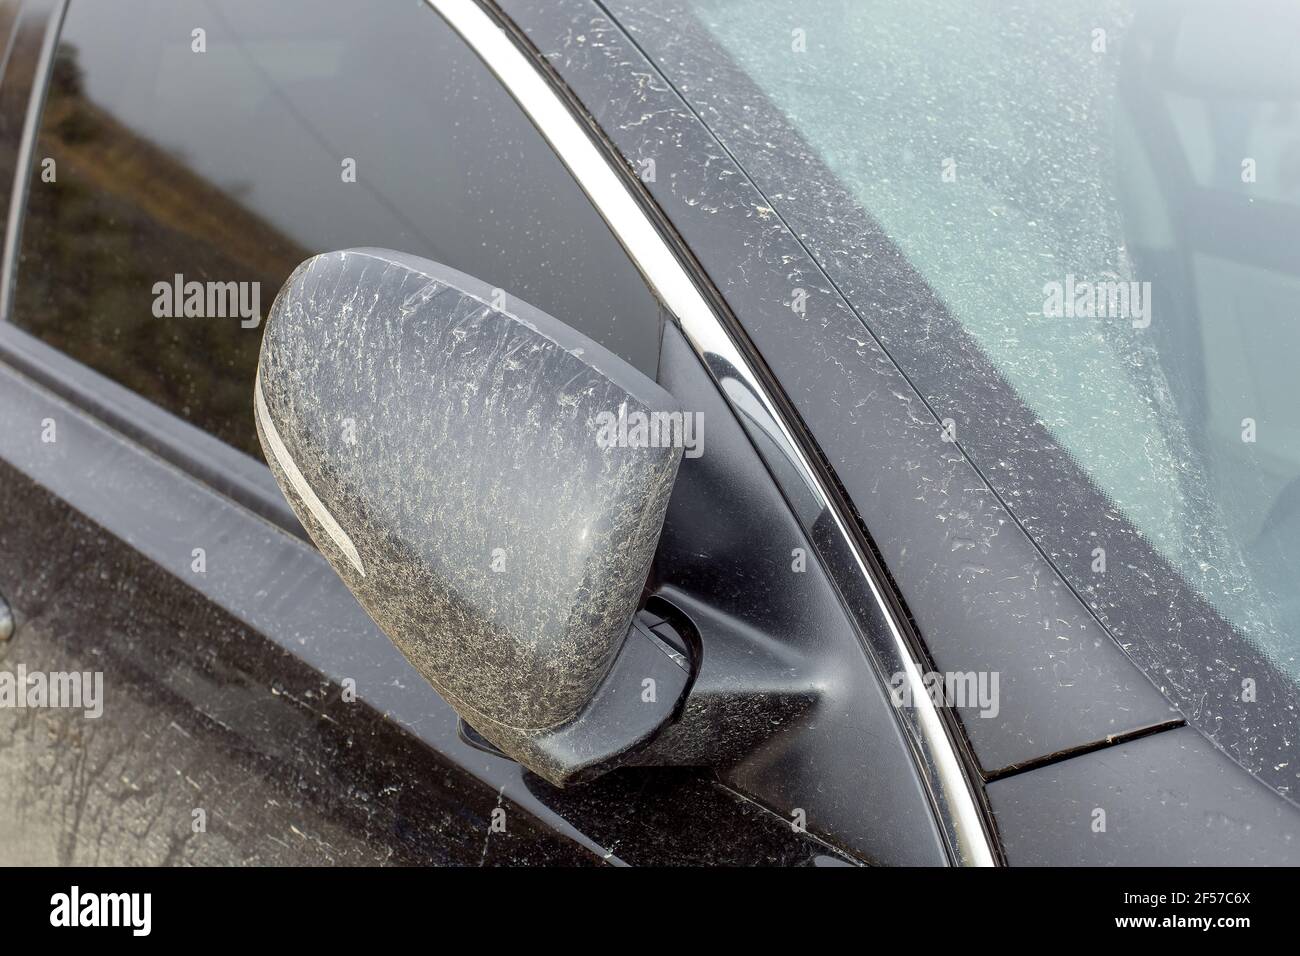 Gefalteter Rückspiegel mit einer trockenen Schicht bedeckt Schlamm zu einem  schwarzen schmutzigen Auto mit Blinkern an Die Außenspiegelgehäuse  Nahaufnahme des Fahrzeugs exte Stockfotografie - Alamy